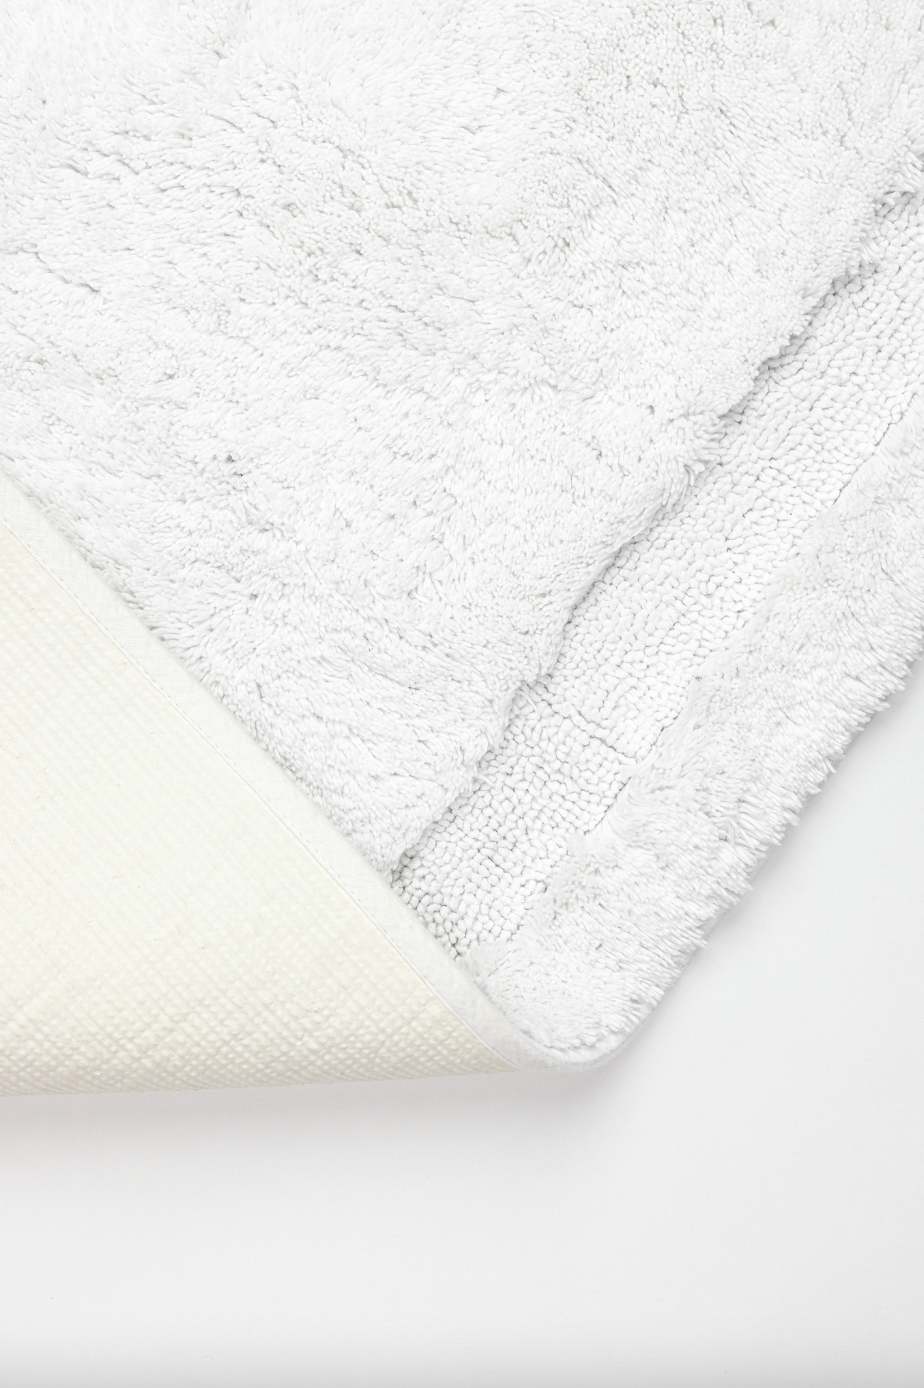 American Soft Linen 100% Cotton Non-slip Bath Mat Rugs, Bath Mats